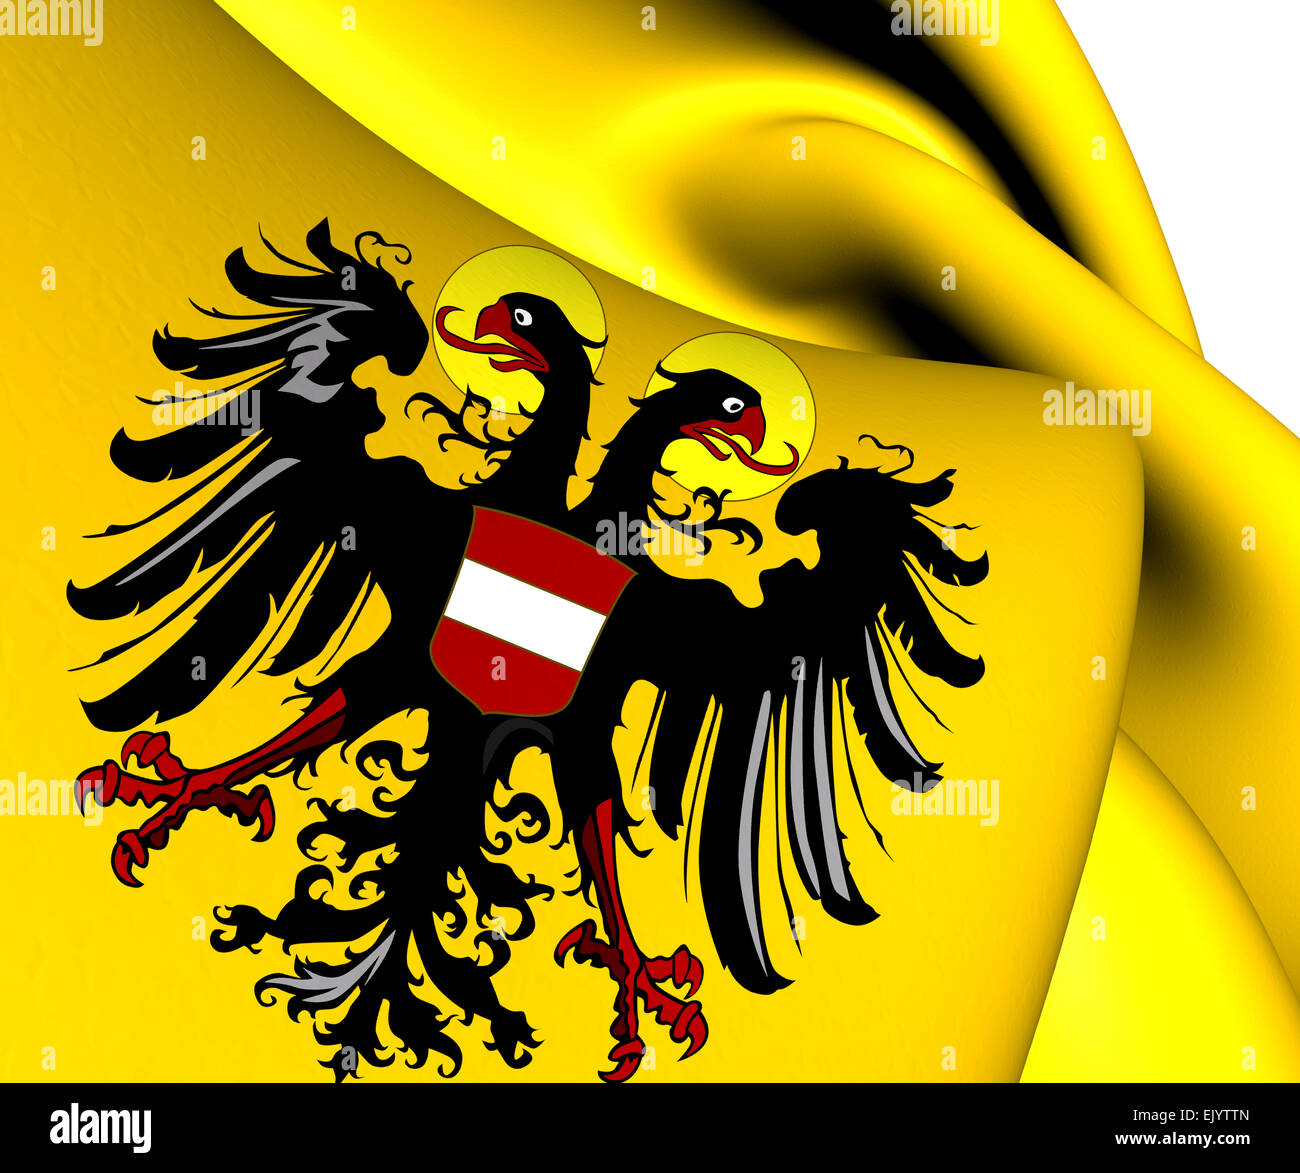 Römisch Deutsches Reich Flagge (1437-1493). Hautnah. Stockfoto